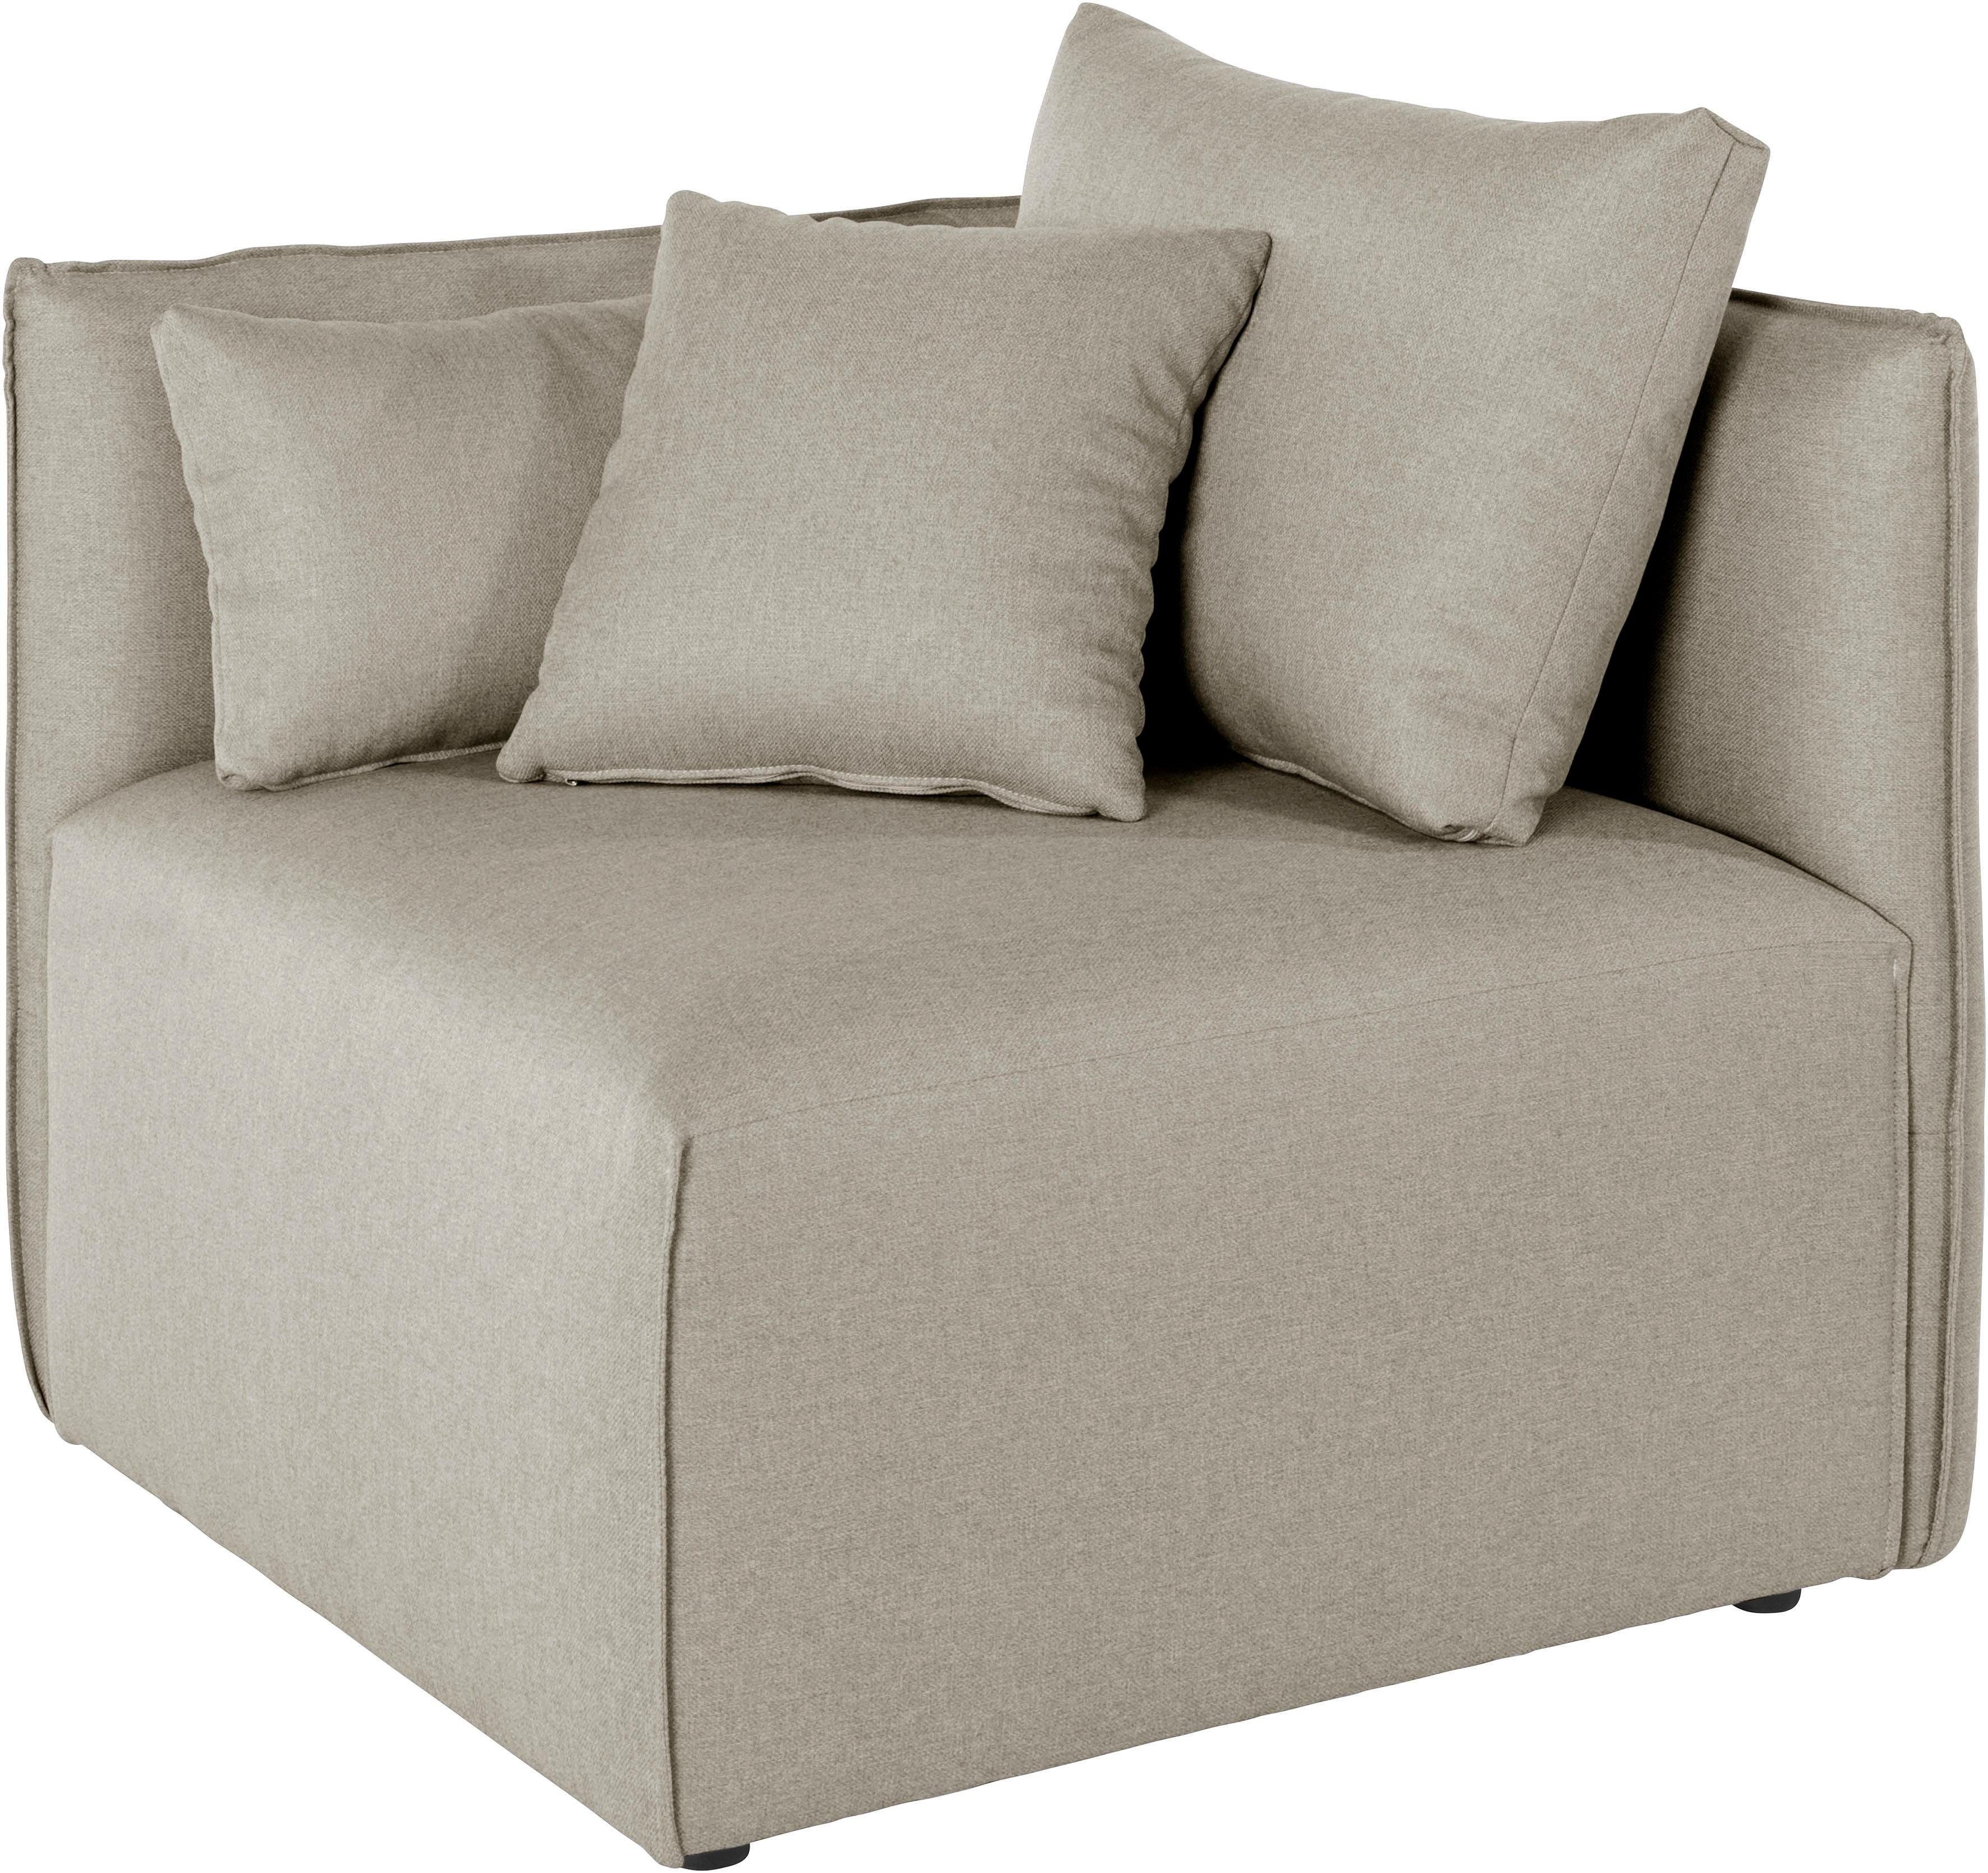 St), Bezugsqualitäten zum Farben (1 - vielen und Nöre in Modul Zusammenstellen; andas Sofa-Eckelement